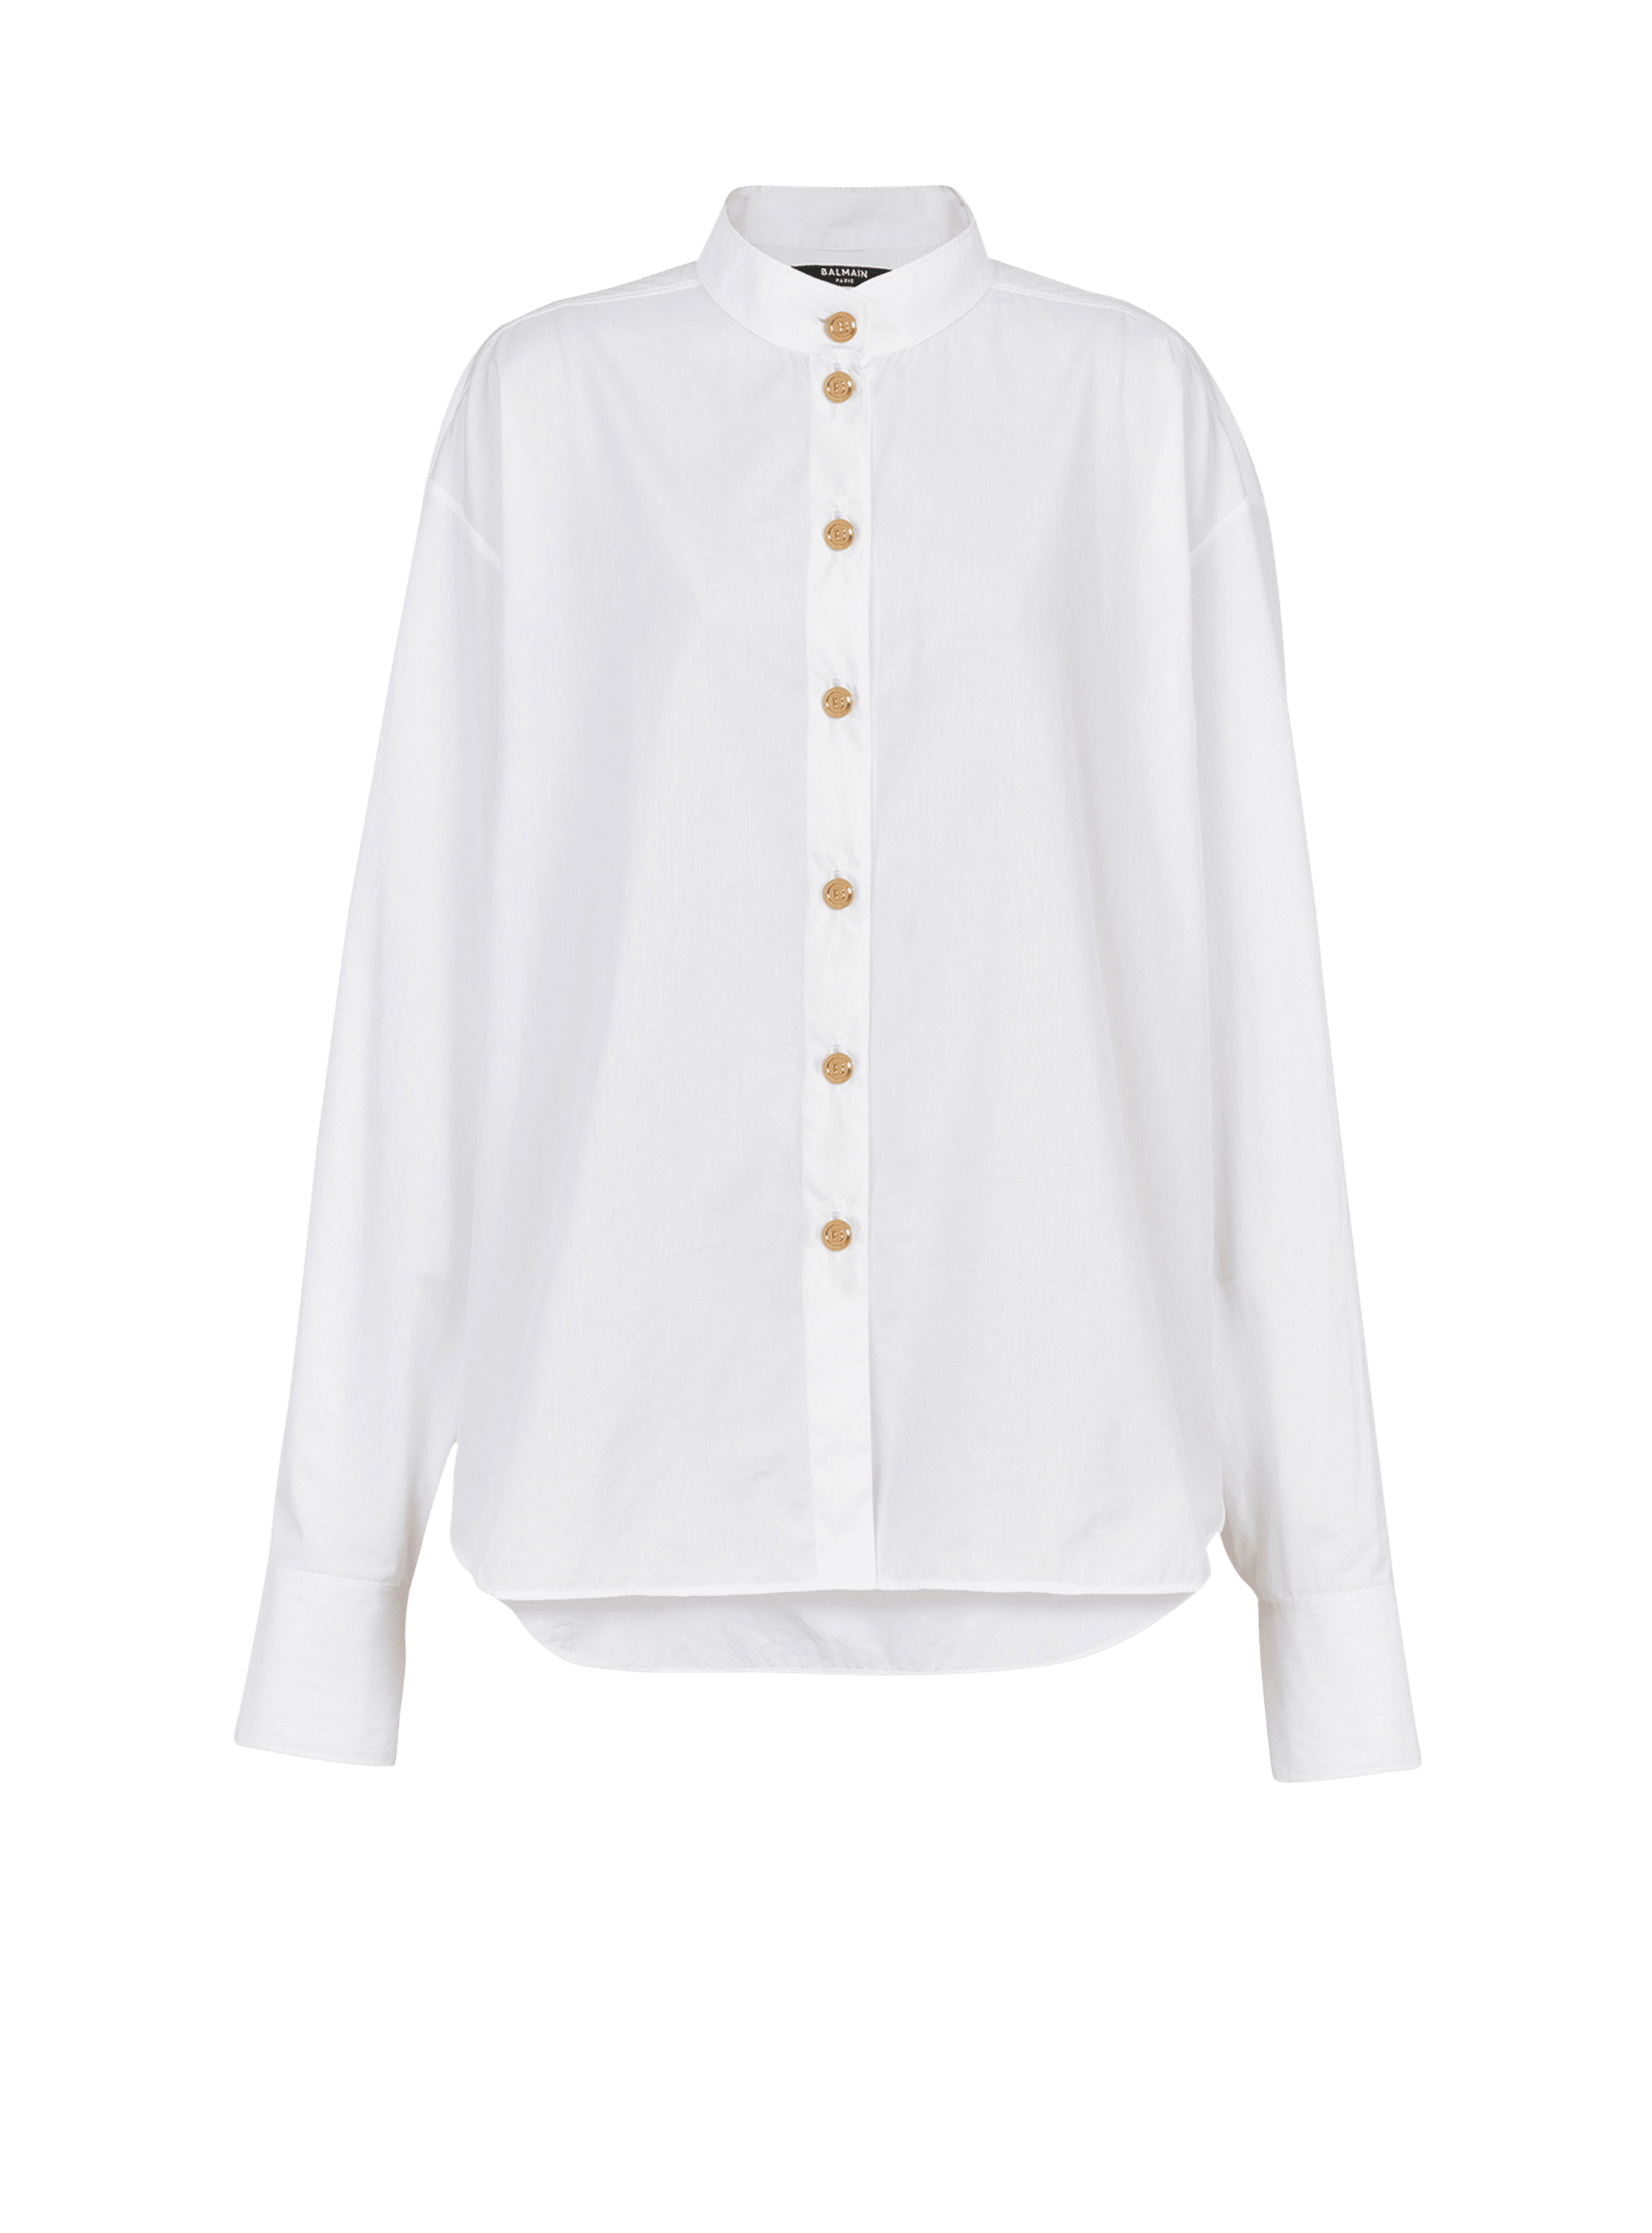 Poplin shirt, white, hi-res